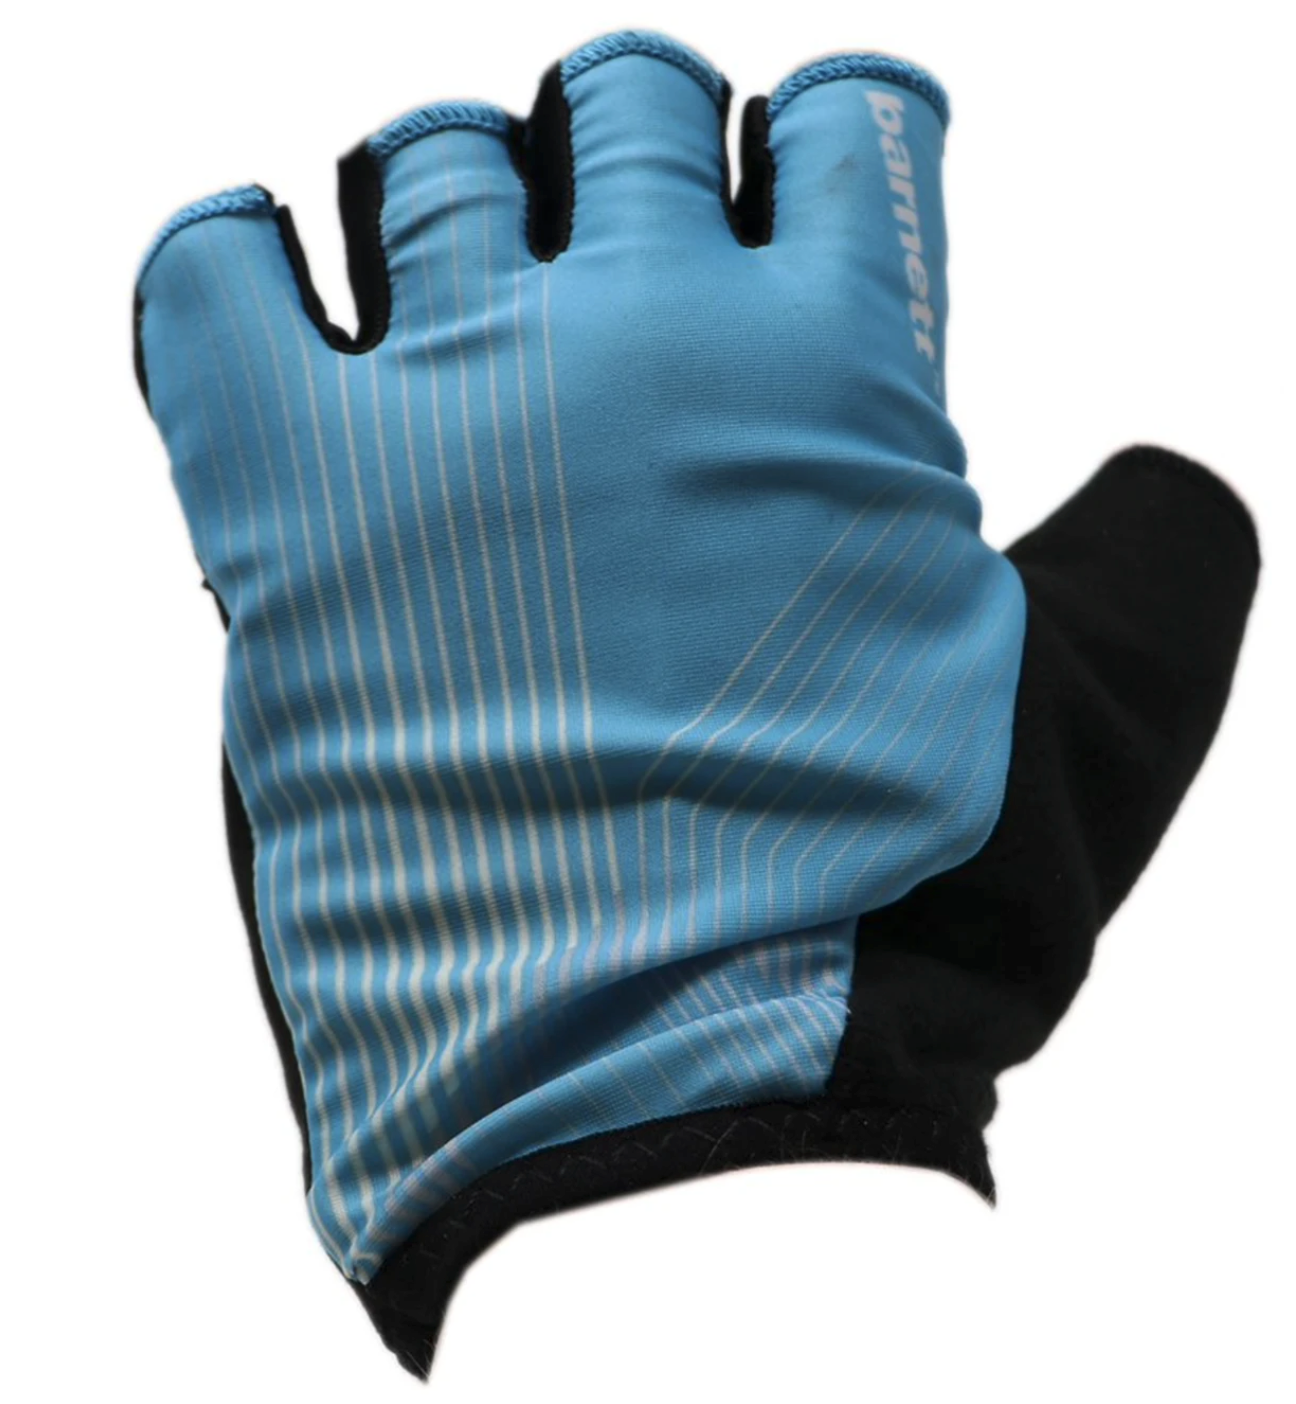 BG-08 fingerless bike gloves for competitions